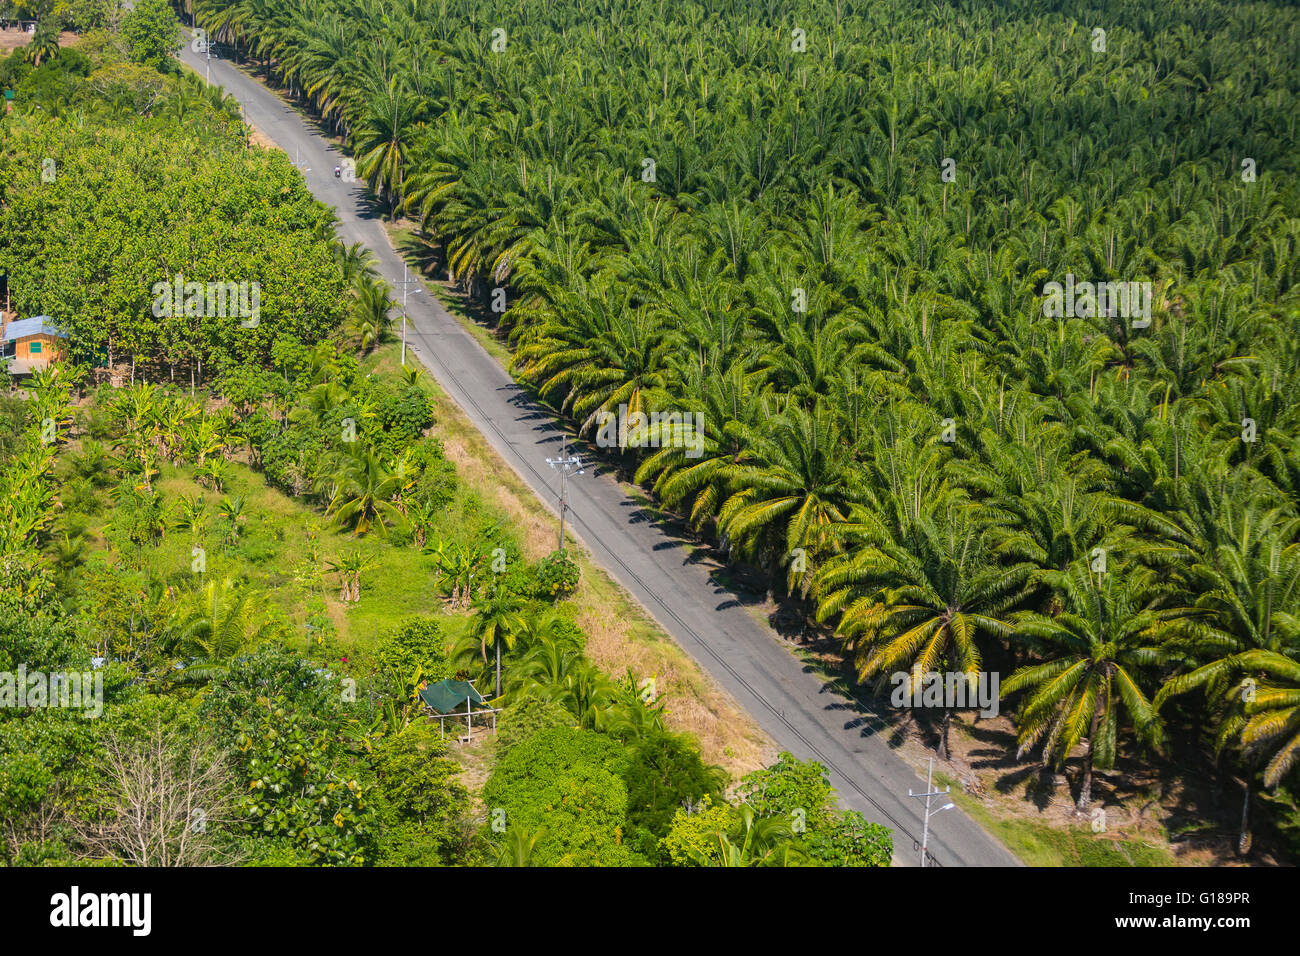 PALMAR SUR, COSTA RICA - Vue aérienne de plantation de palmiers à huile, dans la province de Puntarenas Banque D'Images